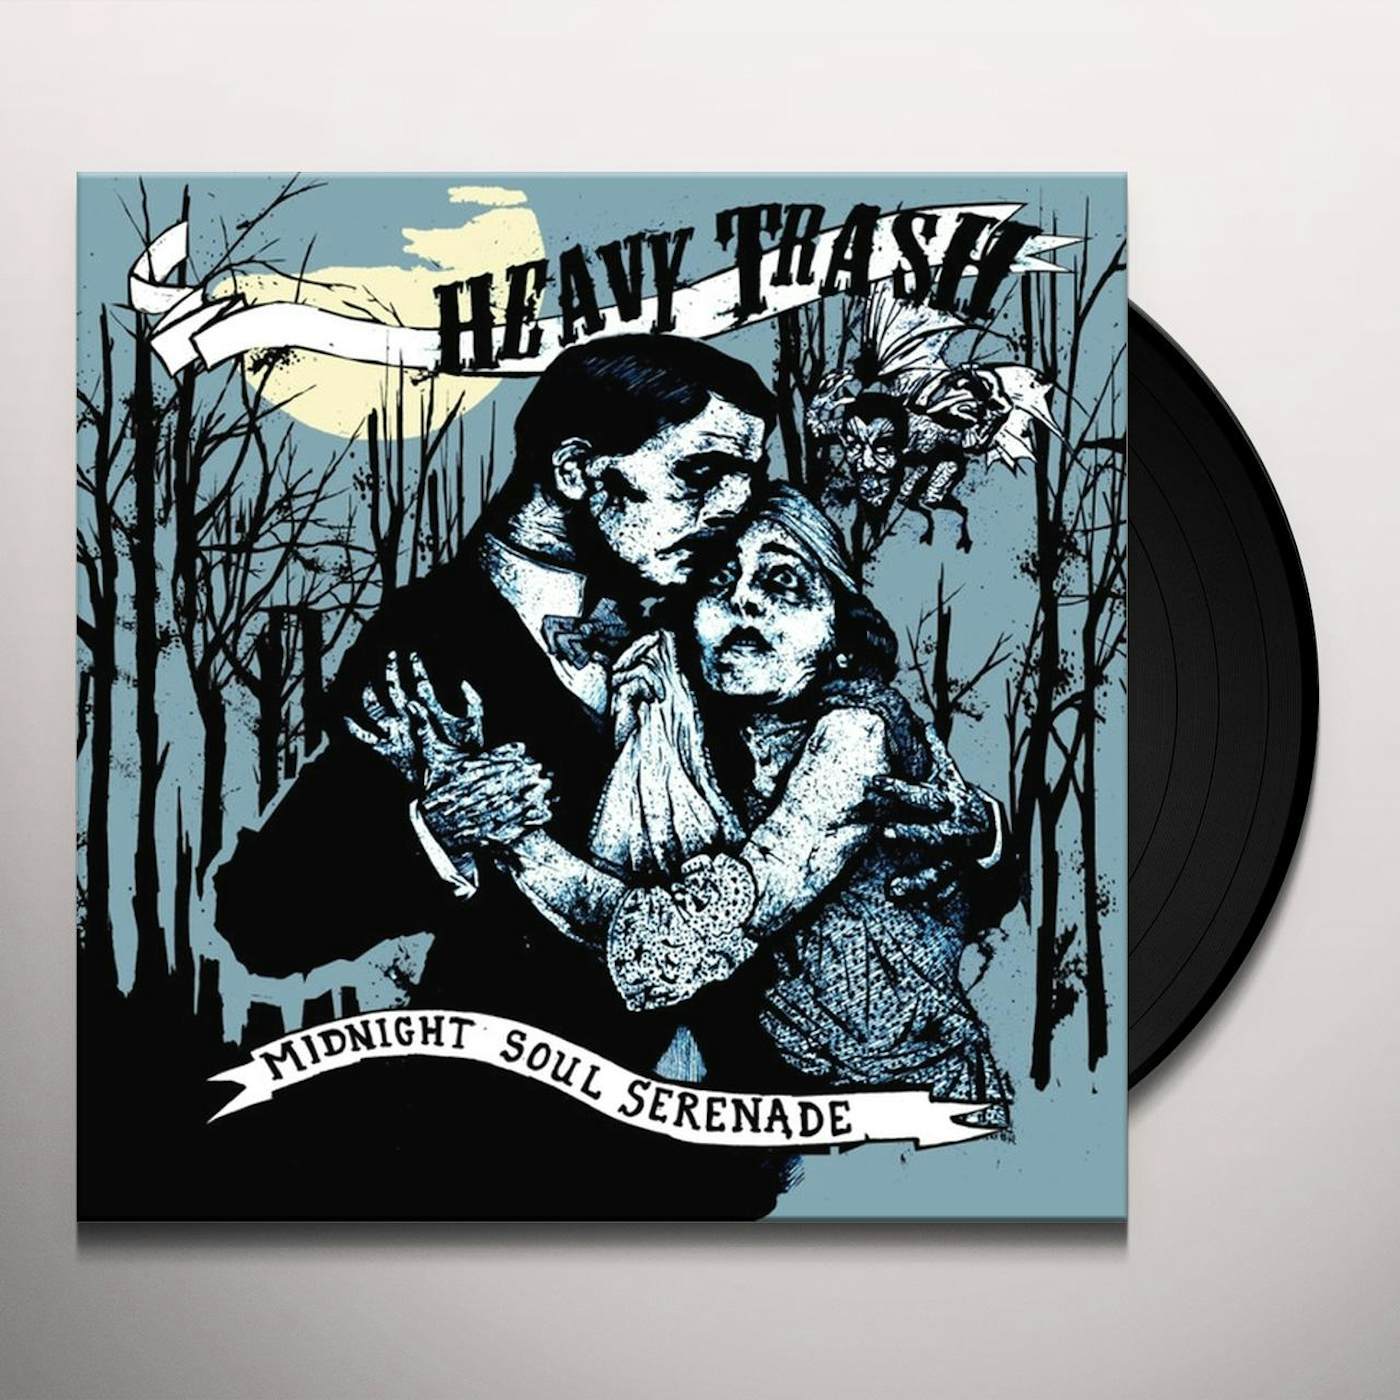 Heavy Trash Midnight Soul Serenade Vinyl Record